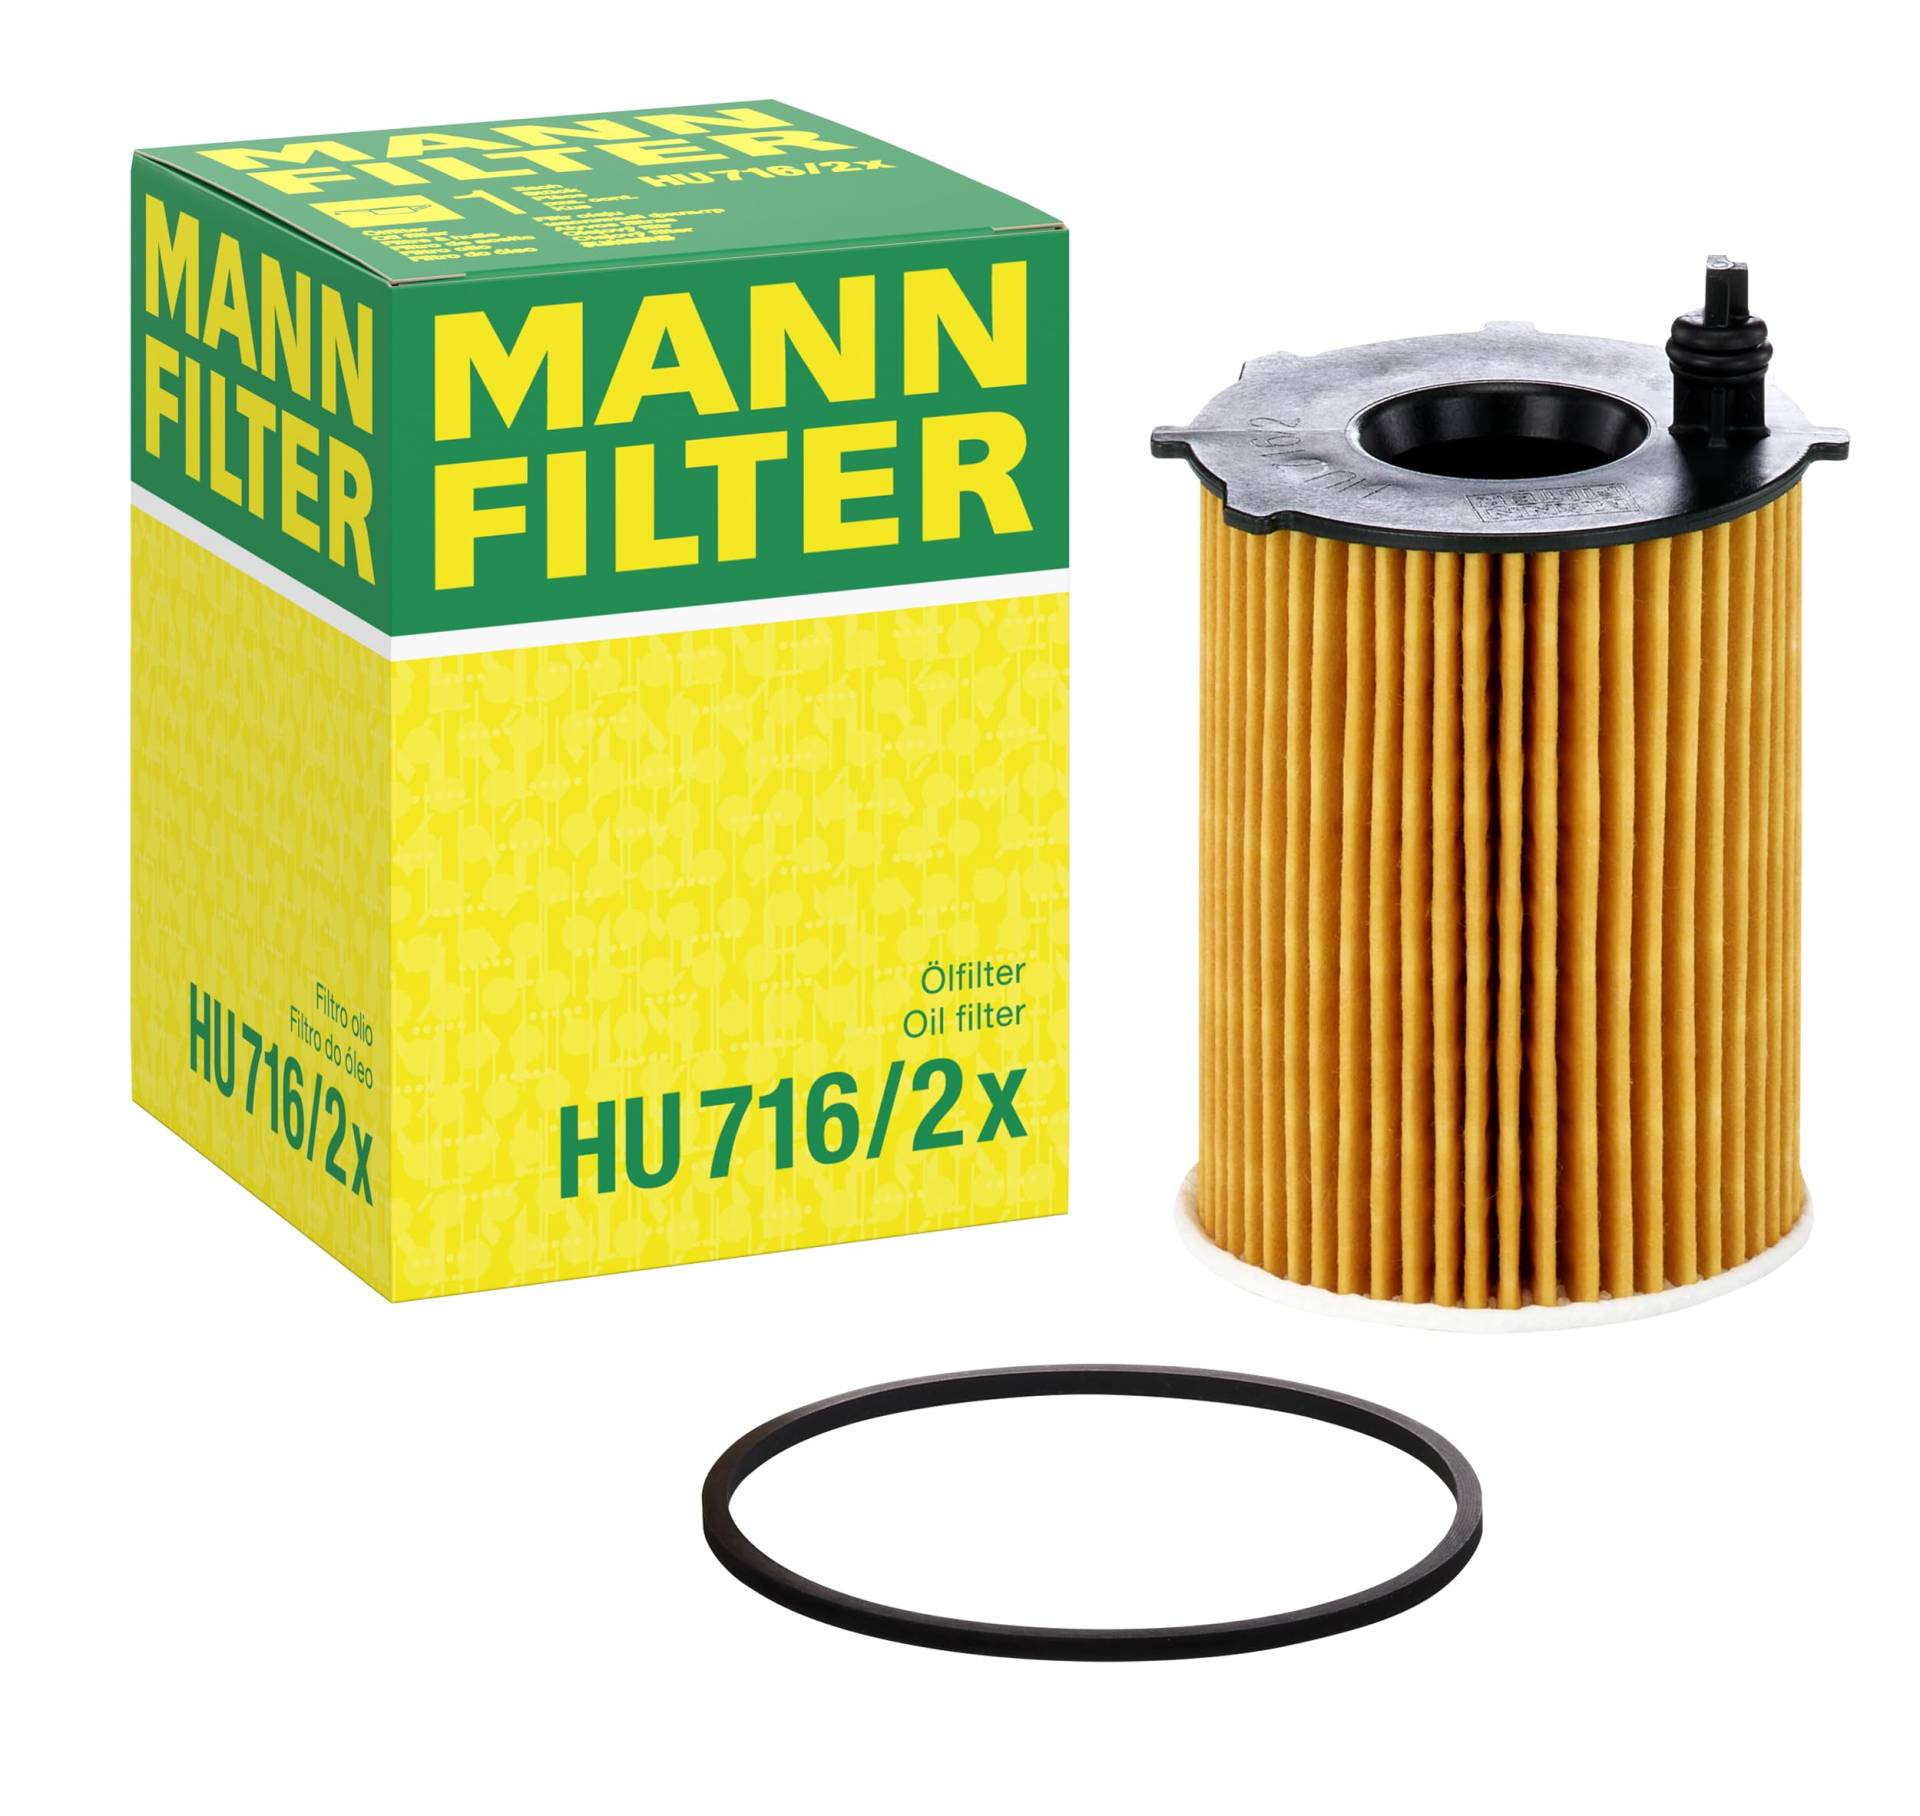 MANN-FILTER HU 716/2 X Ölfilter – Ölfilter Satz mit Dichtung/Dichtungssatz – Für PKW von MANN-FILTER